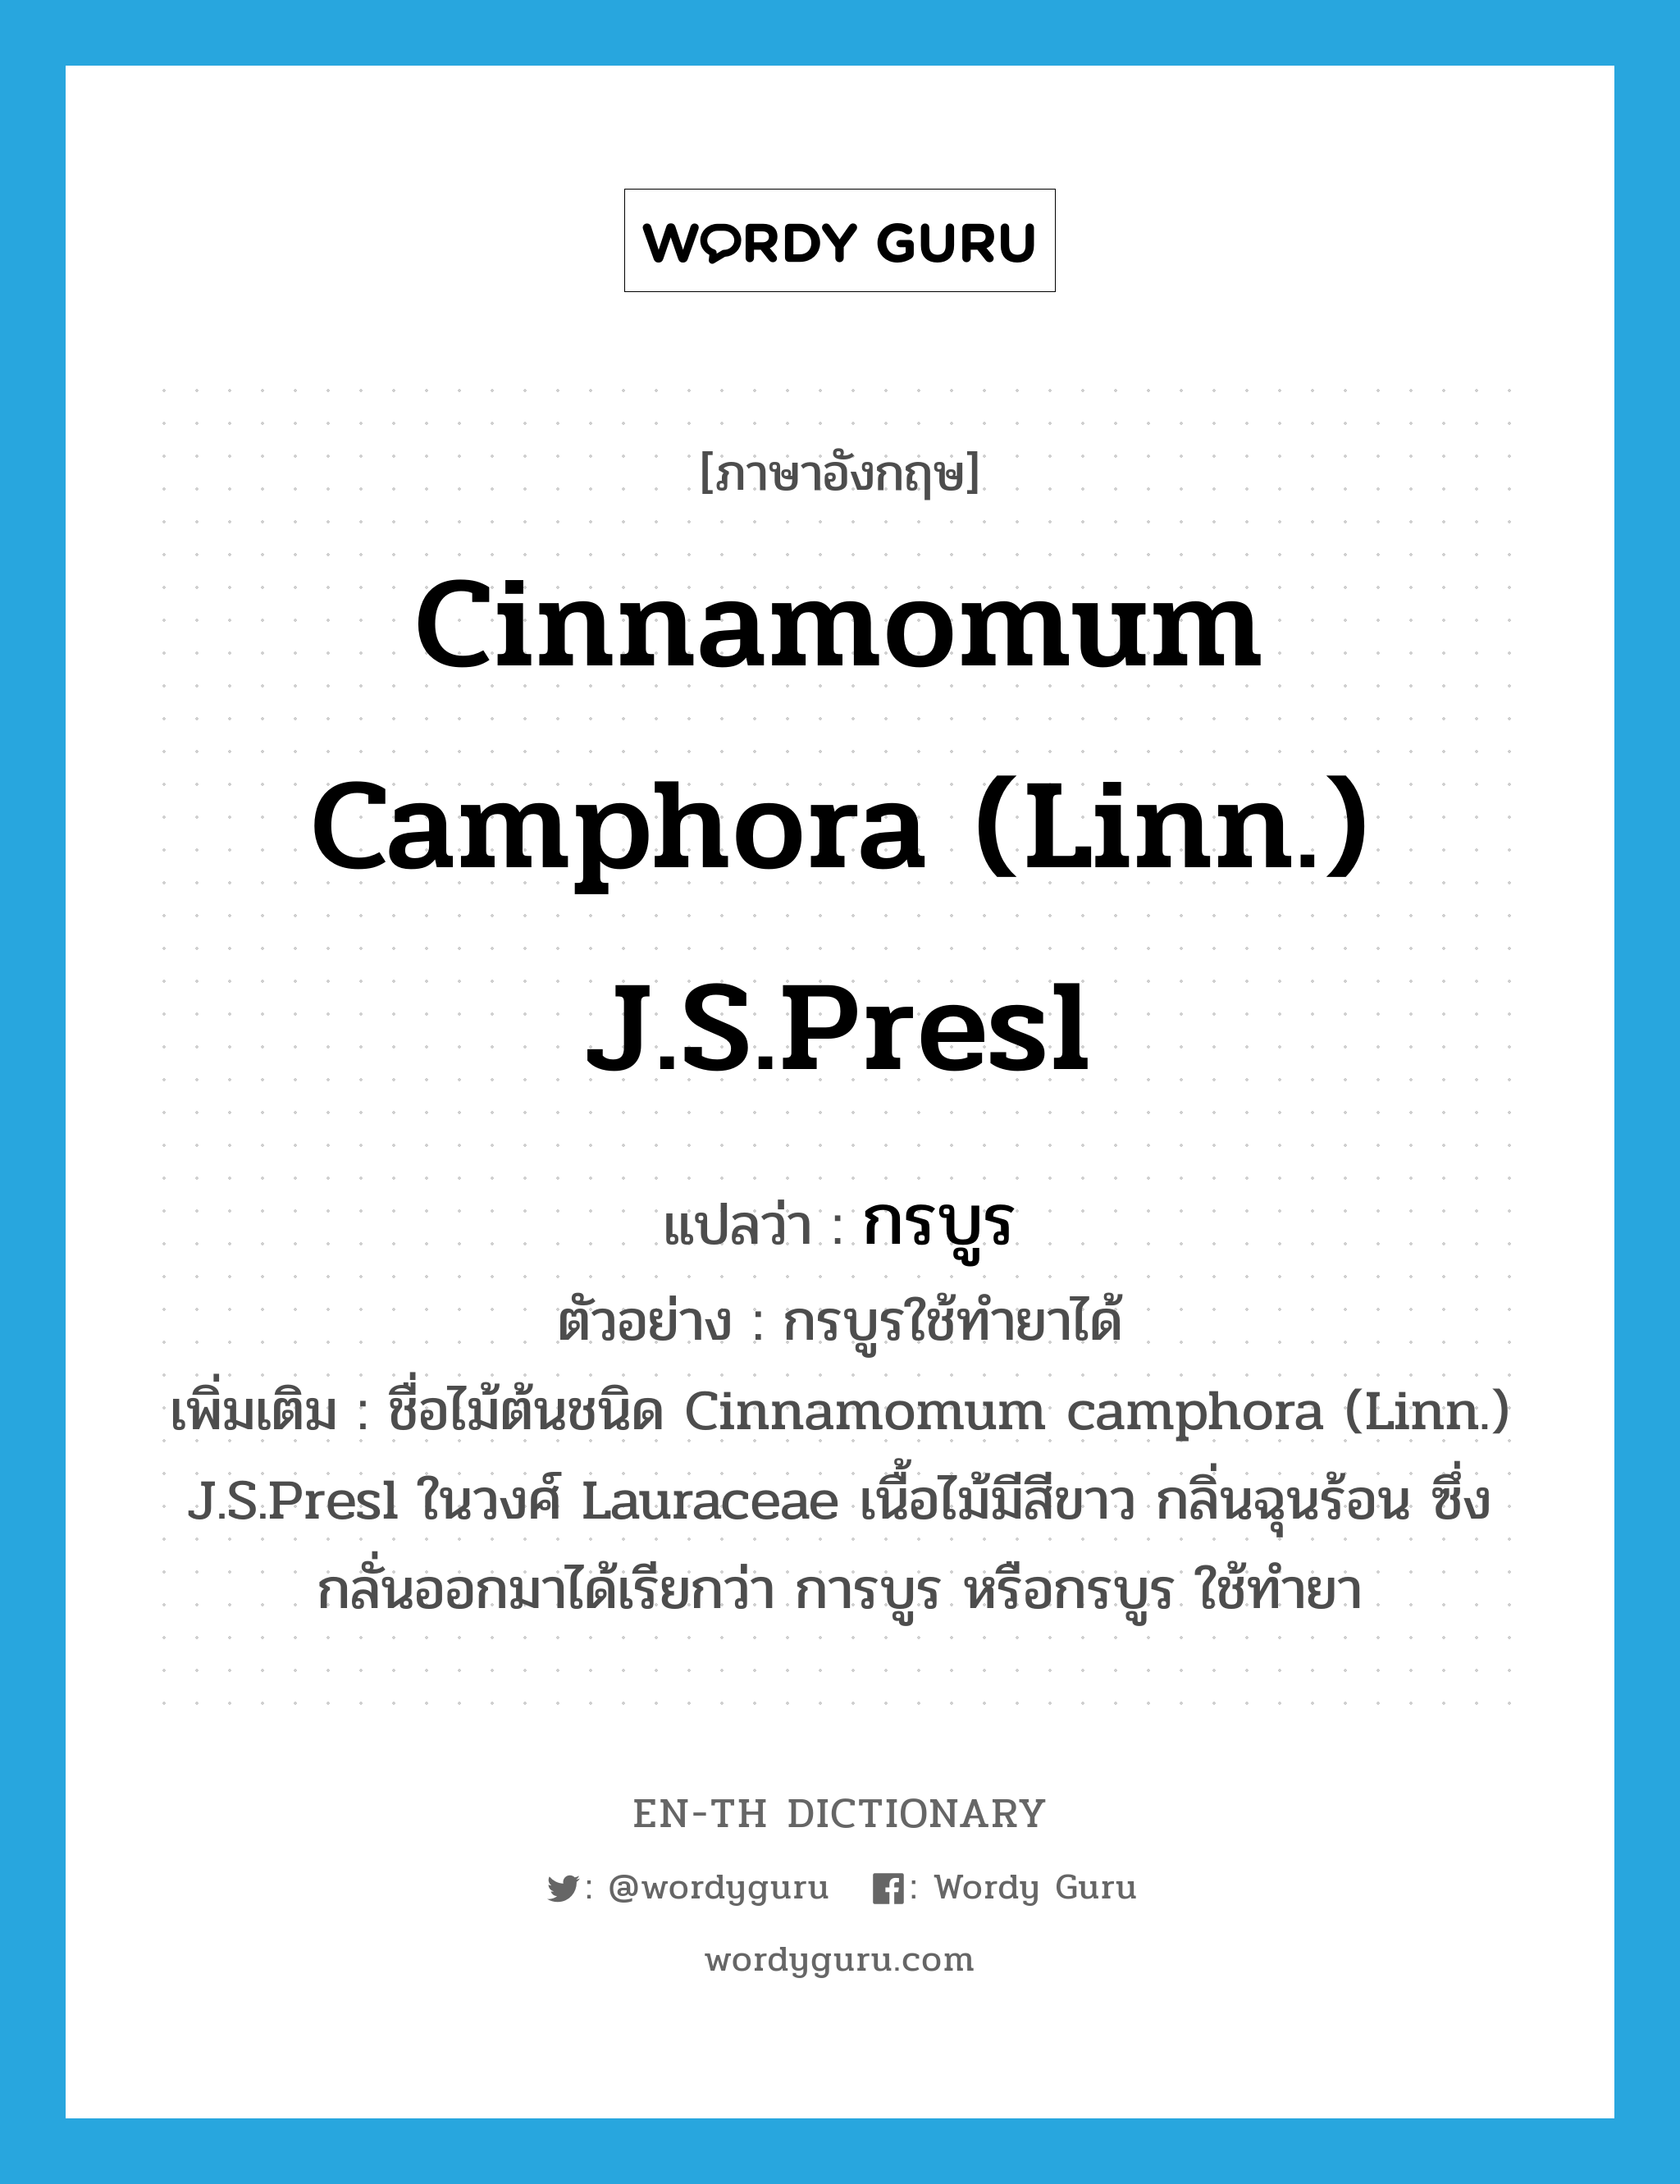 Cinnamomum camphora (Linn.) J.S.Presl แปลว่า?, คำศัพท์ภาษาอังกฤษ Cinnamomum camphora (Linn.) J.S.Presl แปลว่า กรบูร ประเภท N ตัวอย่าง กรบูรใช้ทำยาได้ เพิ่มเติม ชื่อไม้ต้นชนิด Cinnamomum camphora (Linn.) J.S.Presl ในวงศ์ Lauraceae เนื้อไม้มีสีขาว กลิ่นฉุนร้อน ซึ่งกลั่นออกมาได้เรียกว่า การบูร หรือกรบูร ใช้ทำยา หมวด N